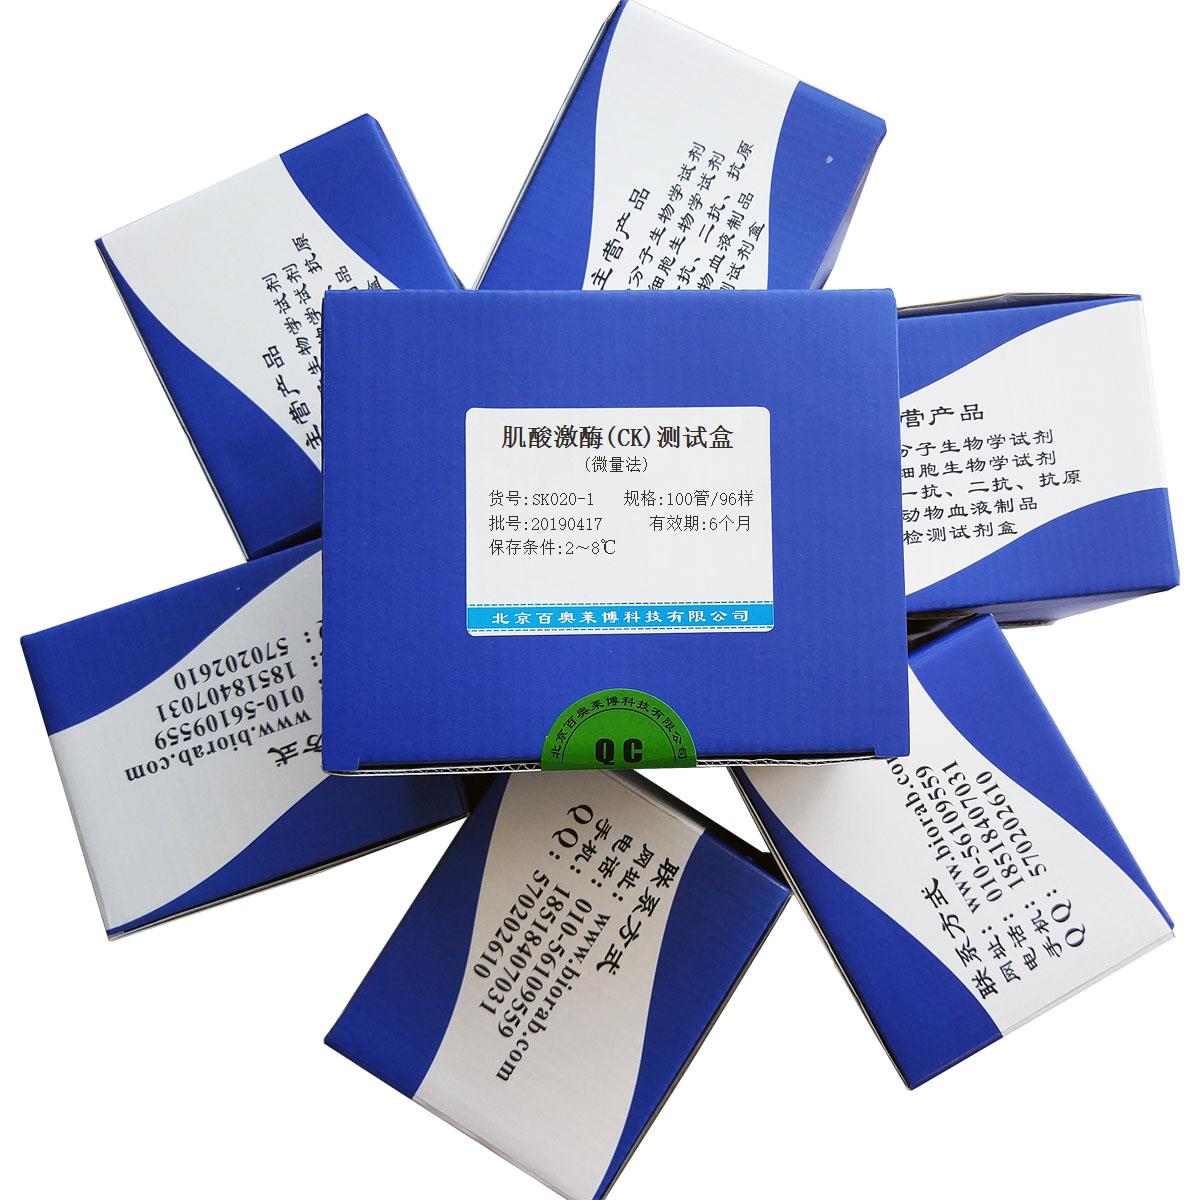 肌酸激酶(CK)测试盒(微量法)北京品牌